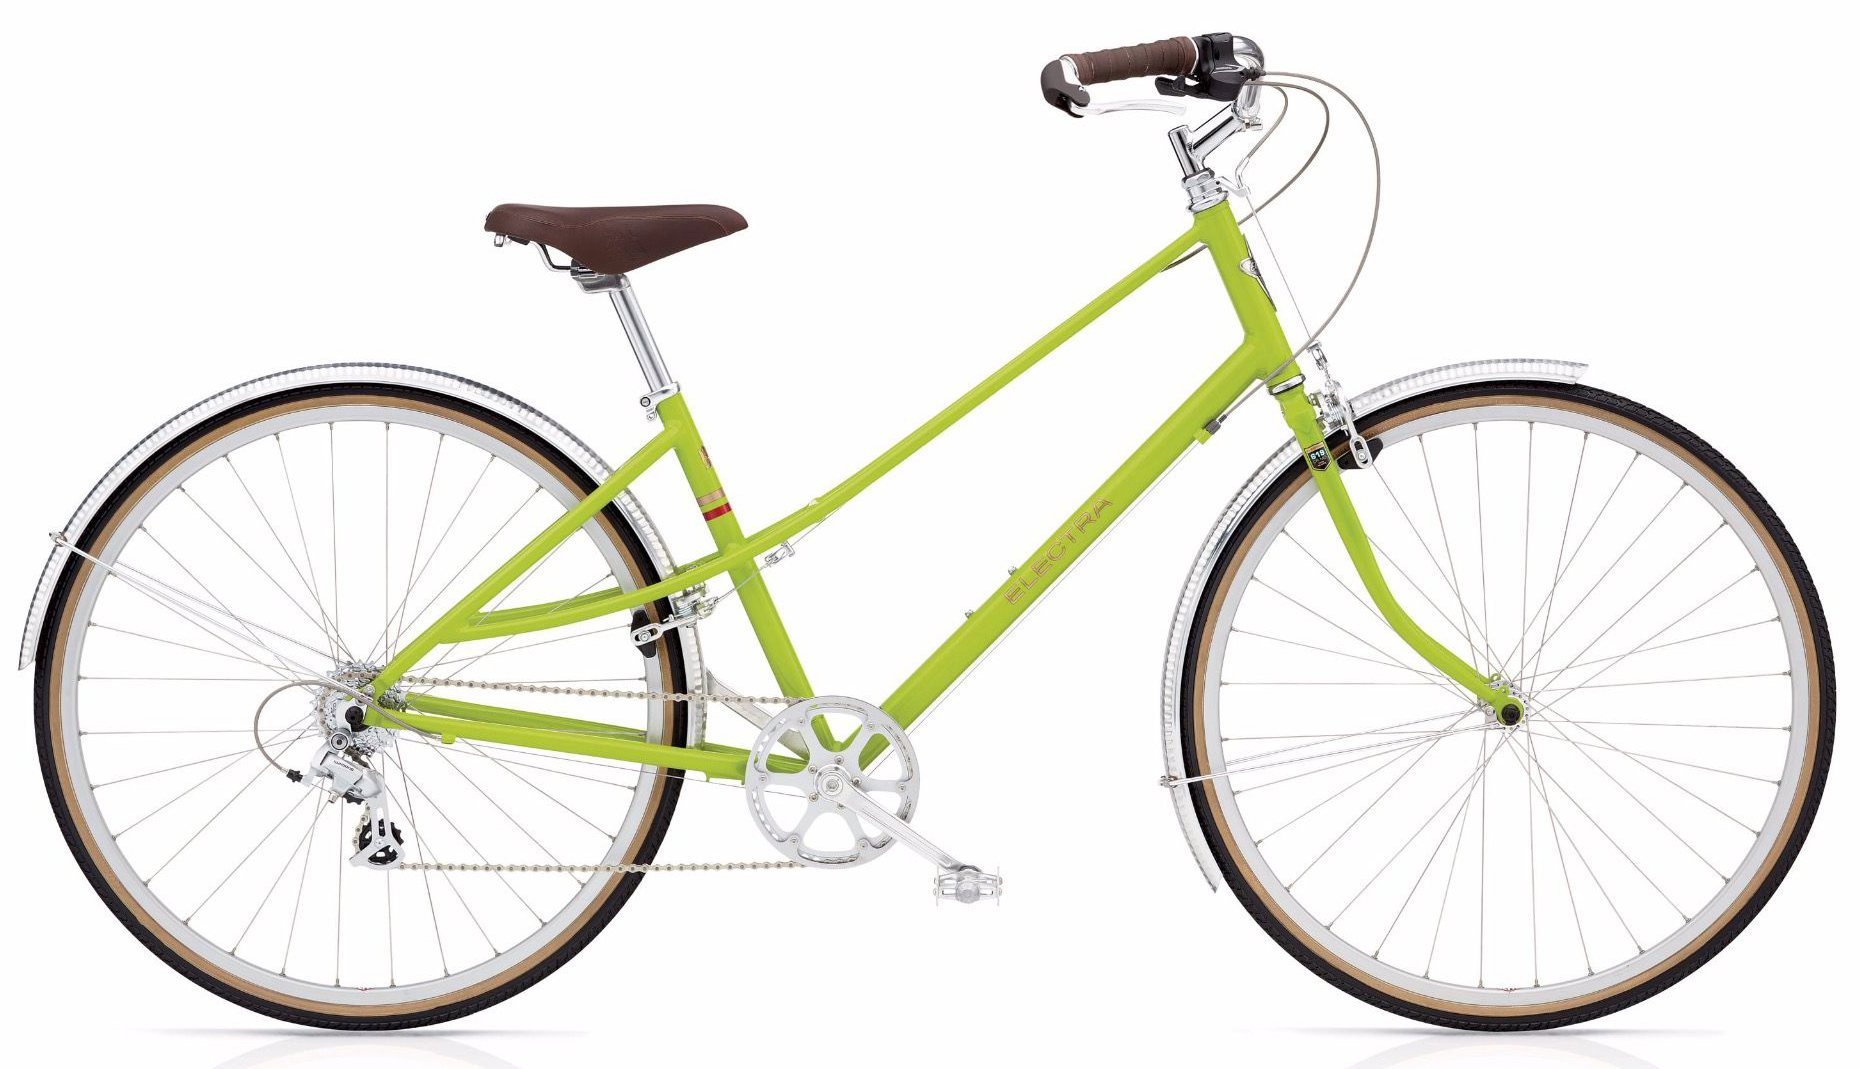  Отзывы о Городском велосипеде Electra Ticino 8D 2019